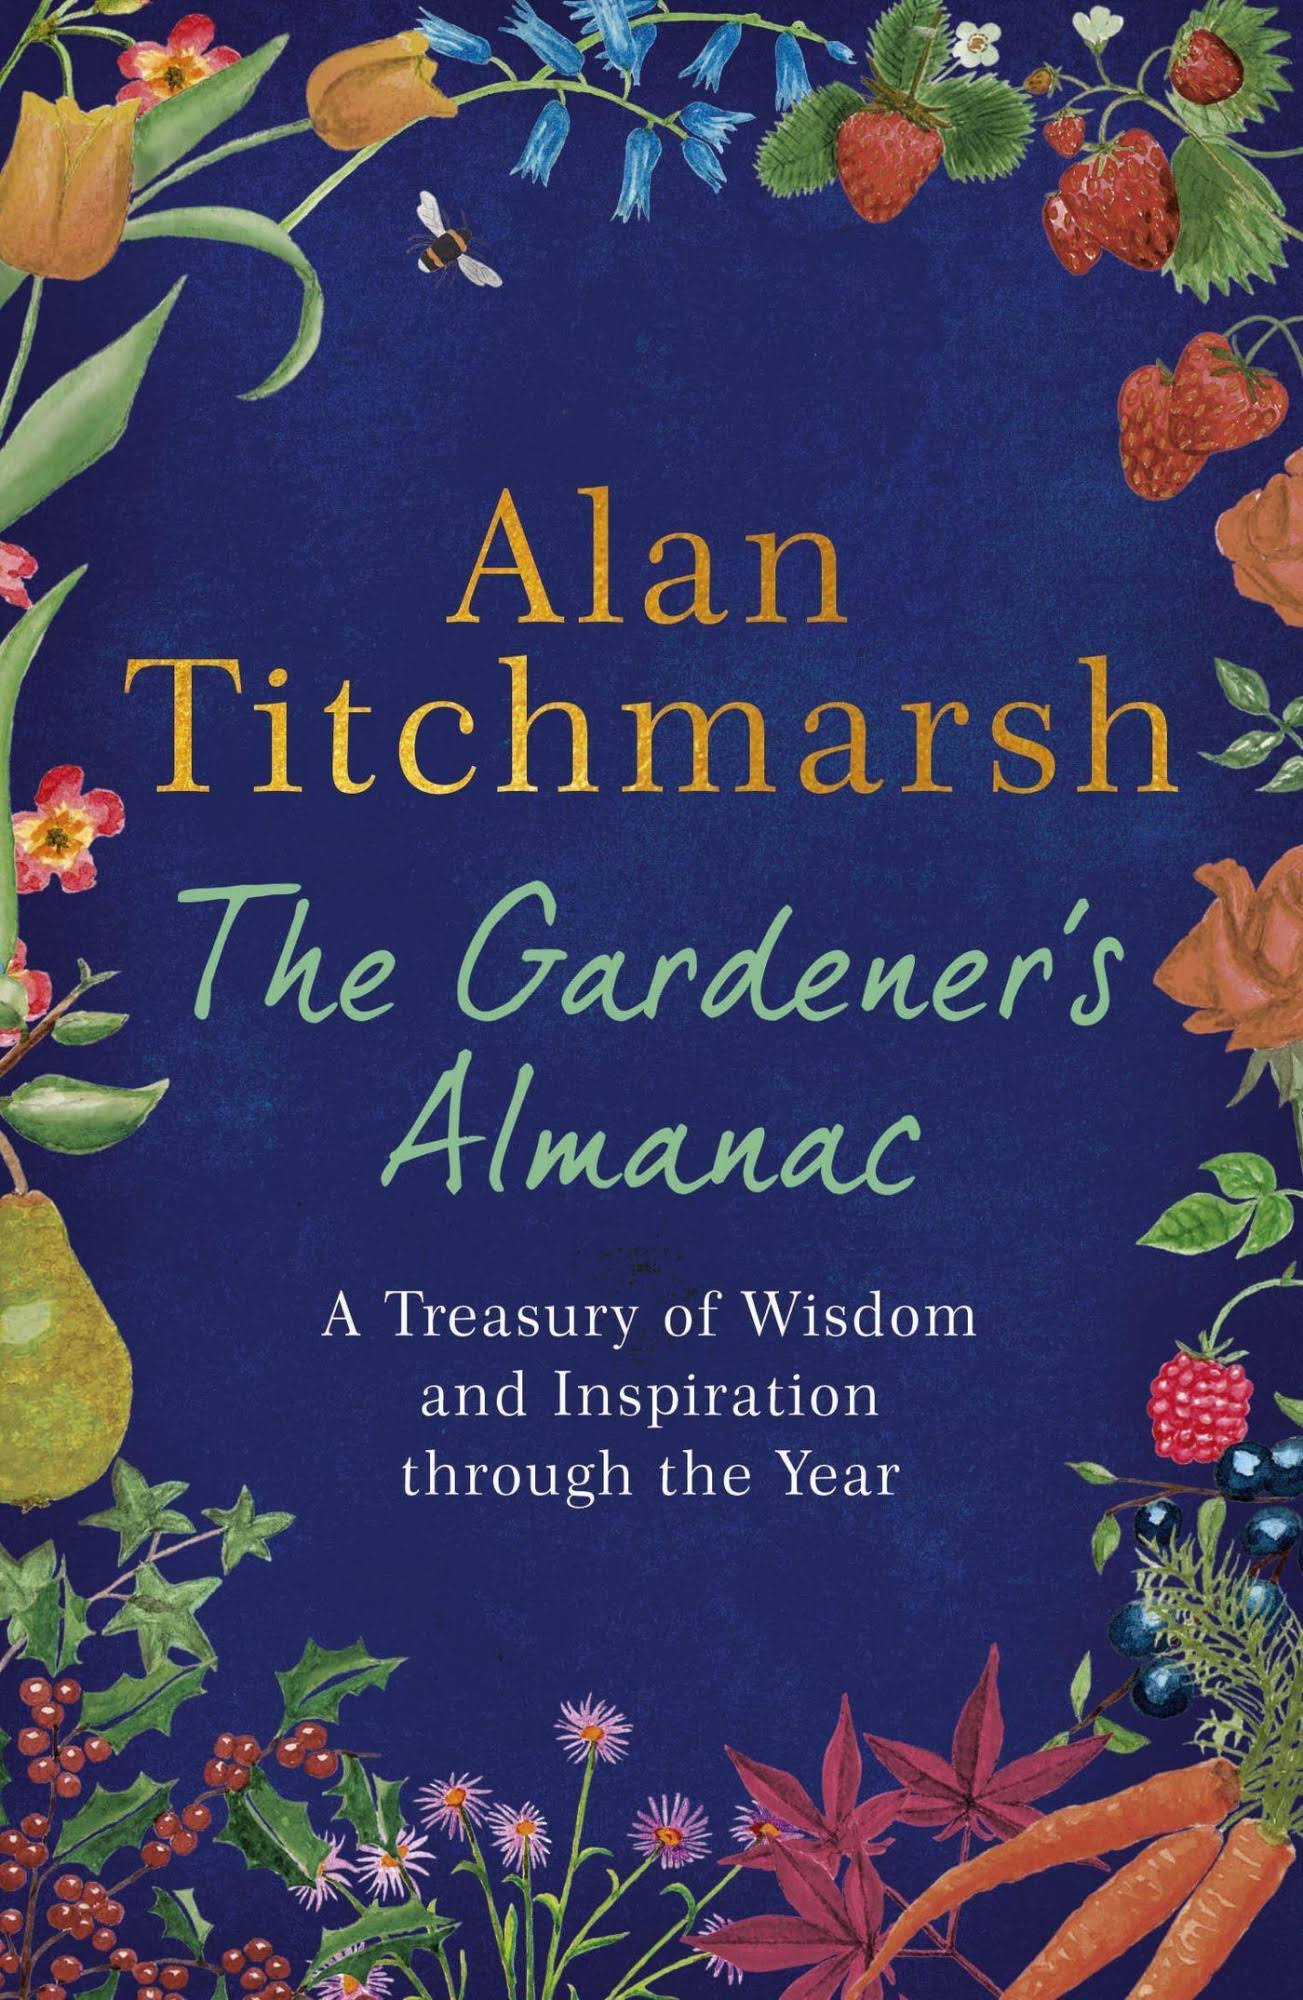 The gardener's almanac